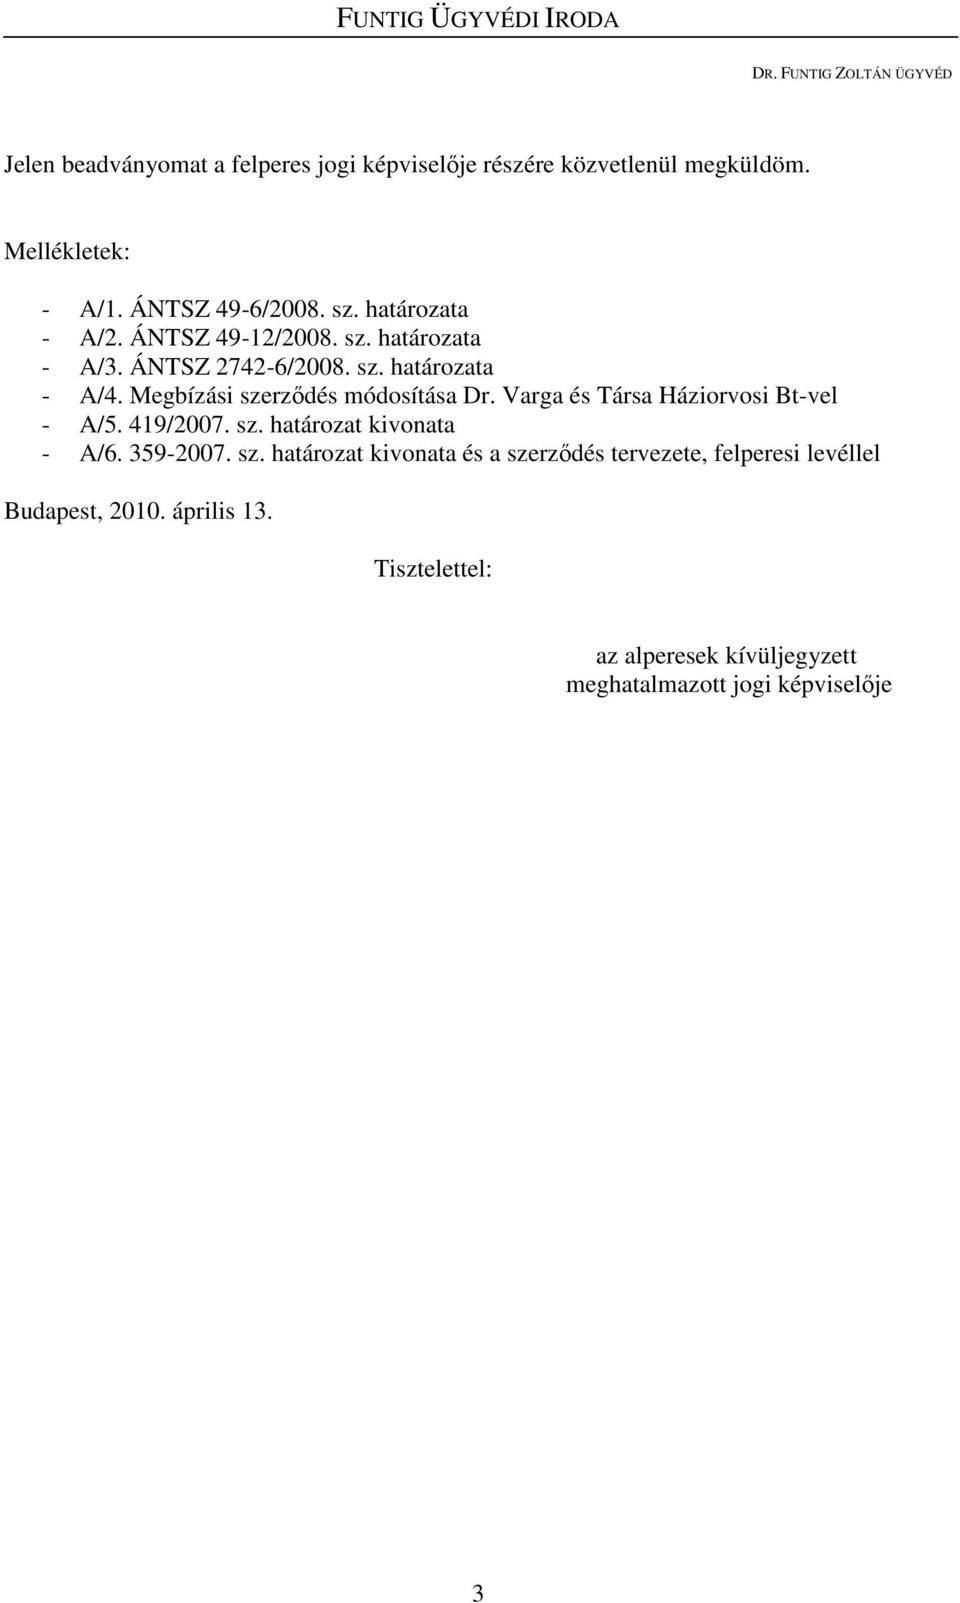 Megbízási szerzıdés módosítása Dr. Varga és Társa Háziorvosi Bt-vel - A/5. 419/2007. sz. határozat kivonata - A/6. 359-2007. sz. határozat kivonata és a szerzıdés tervezete, felperesi levéllel Budapest, 2010.